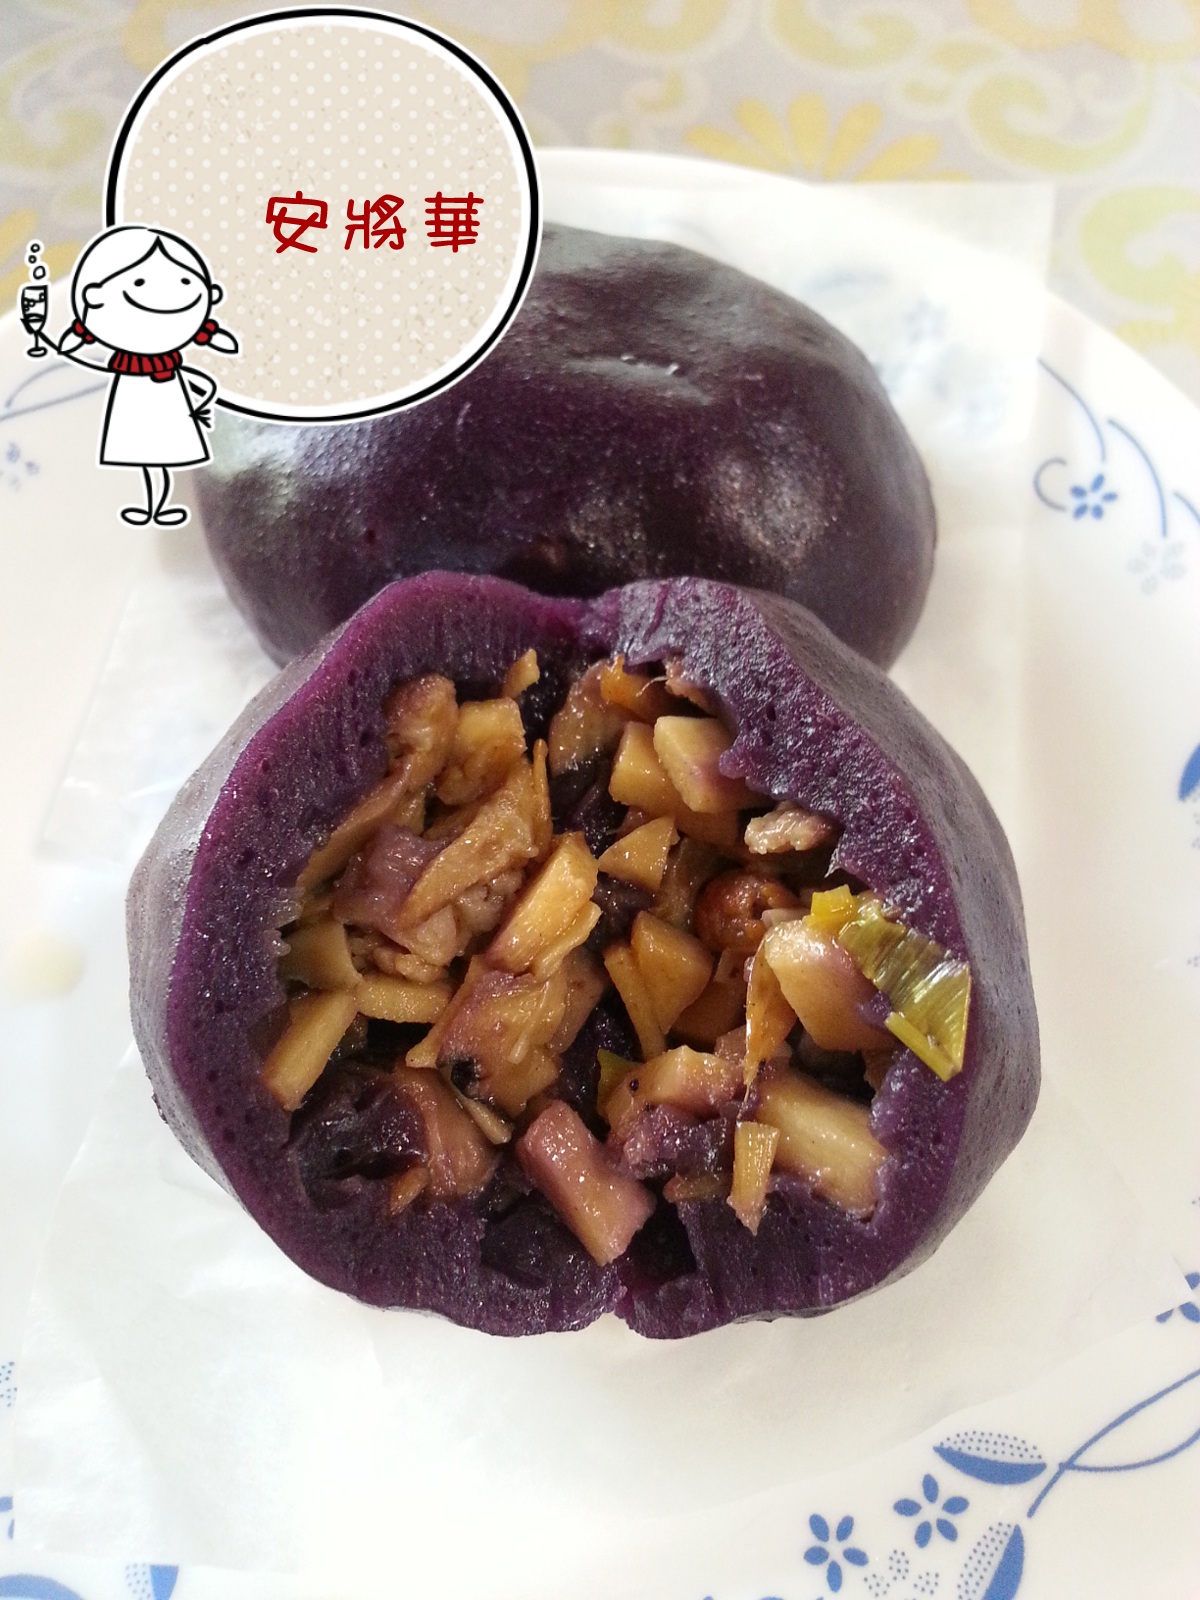 紫薯菜包 by 扎赫拉的廚房好時光 - 愛料理